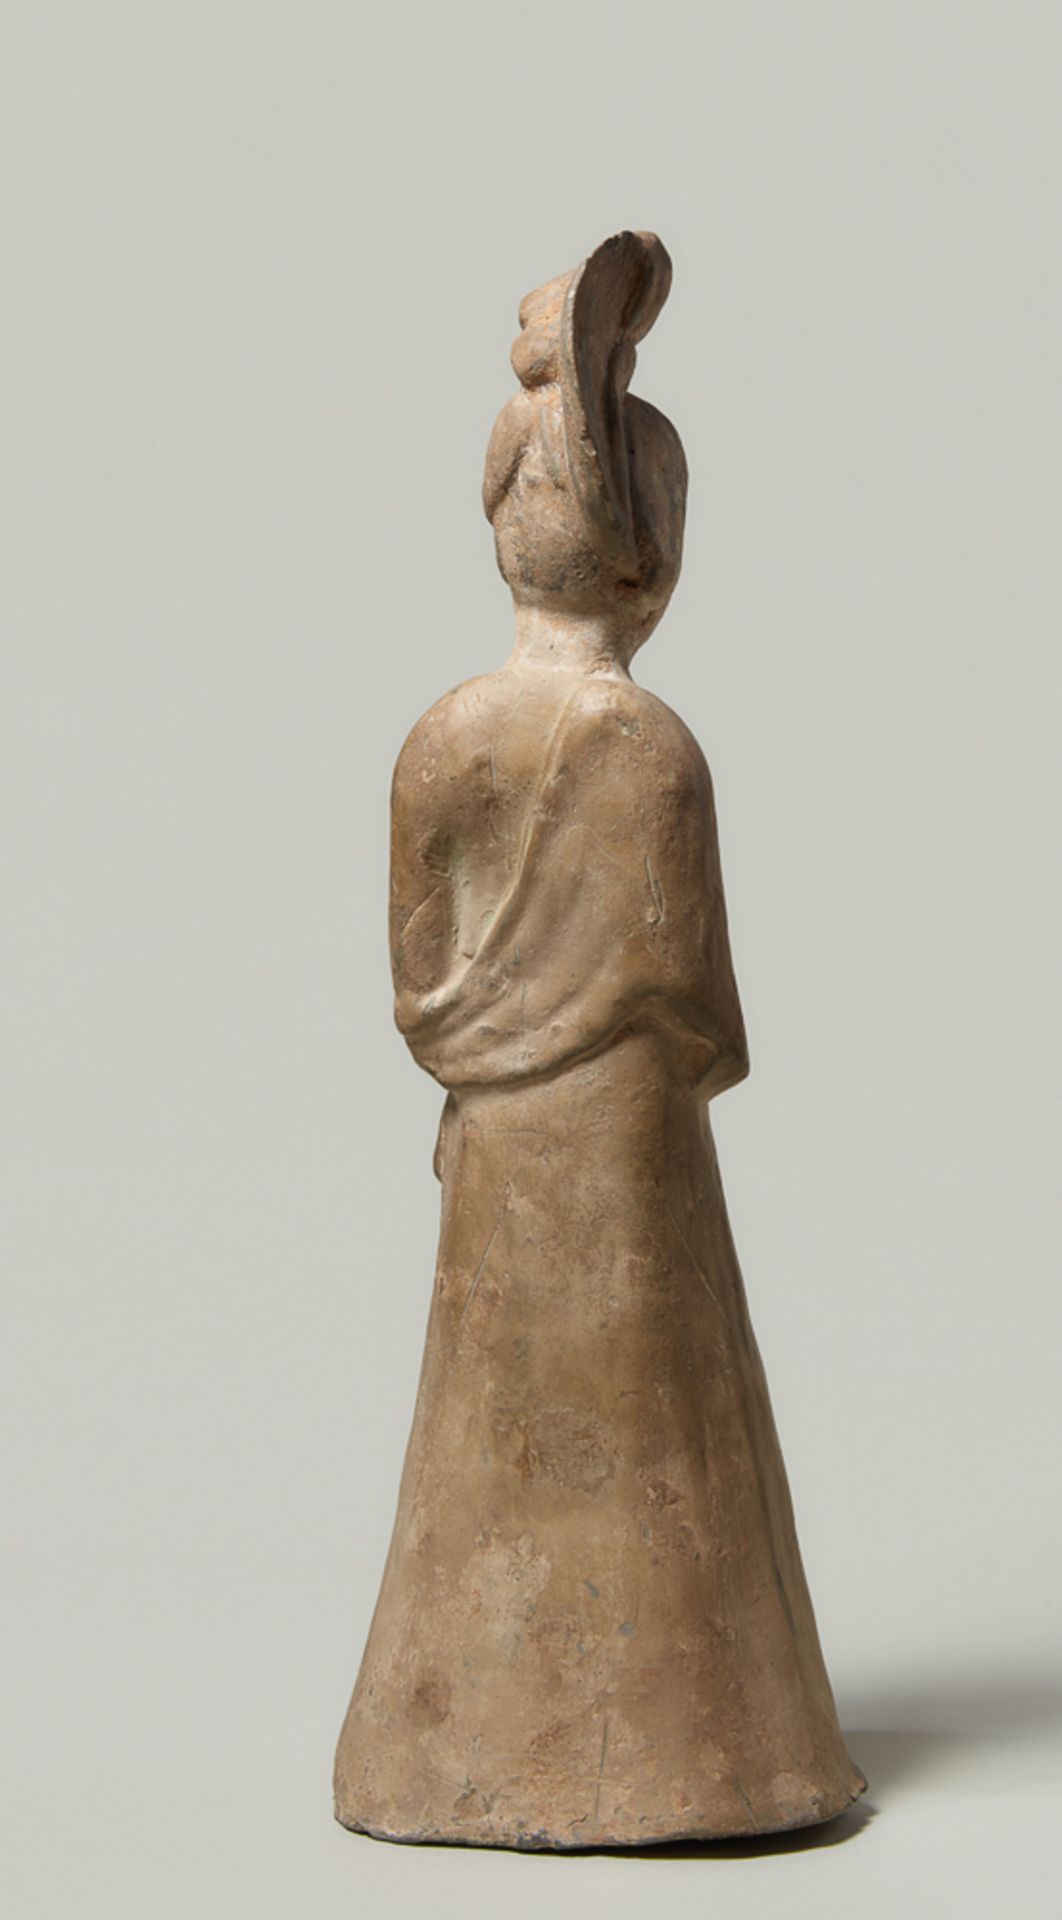 STEHENDE HOFDAME Terrakotta. China, Tang-Dynastie (618 - 905) Schlanke Figur in bodenlangem Rock, - Image 5 of 5